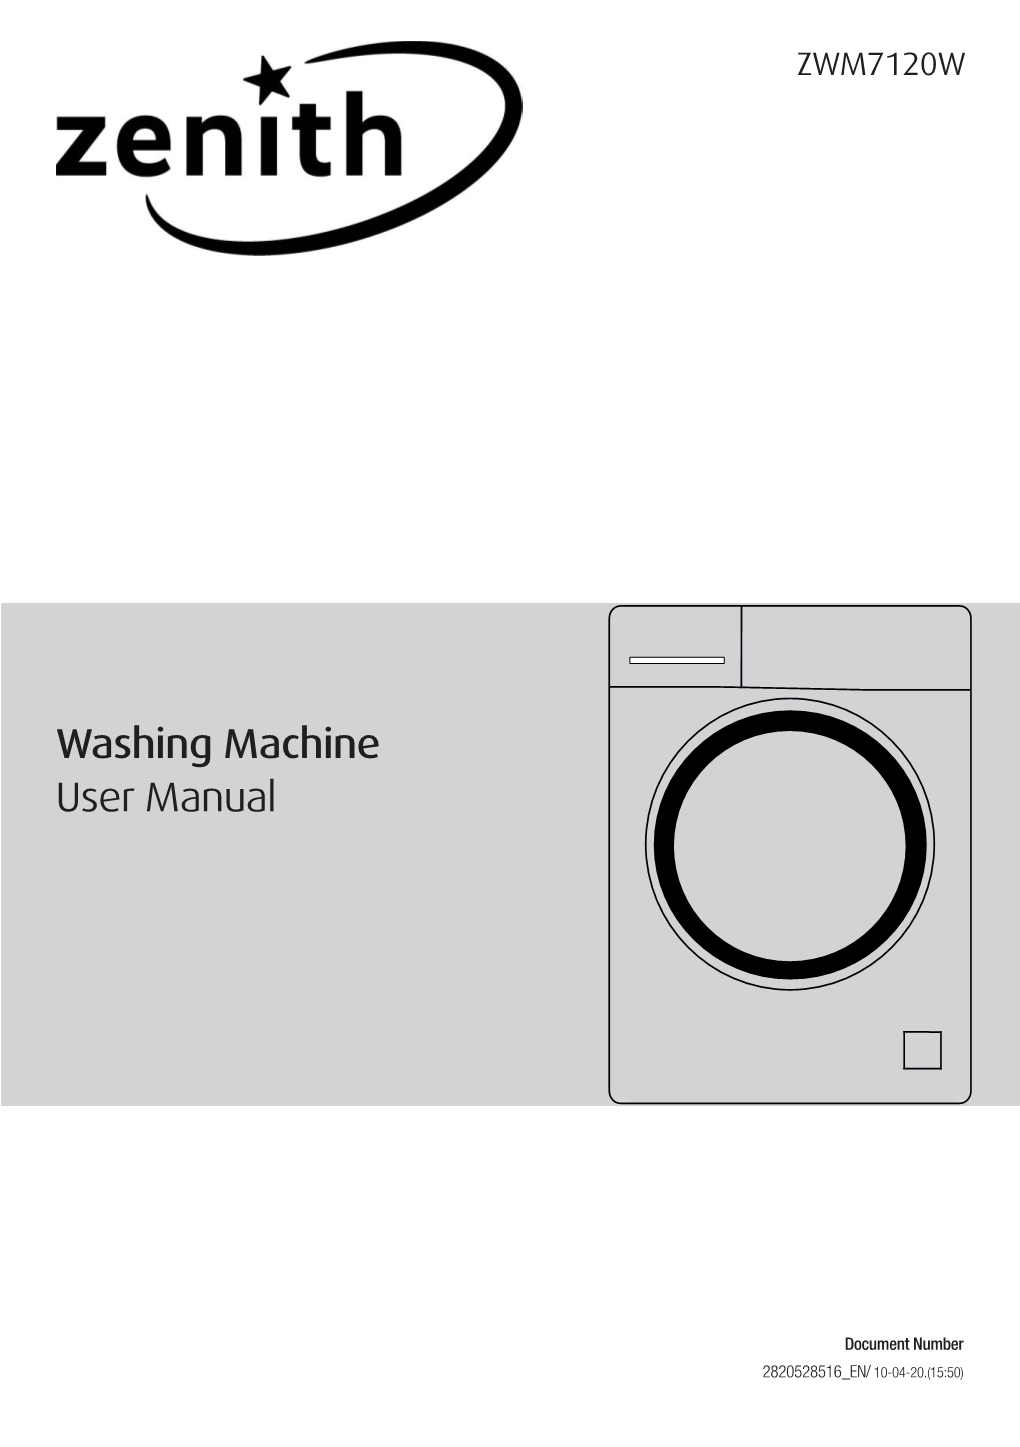 Washing Machine User Manual